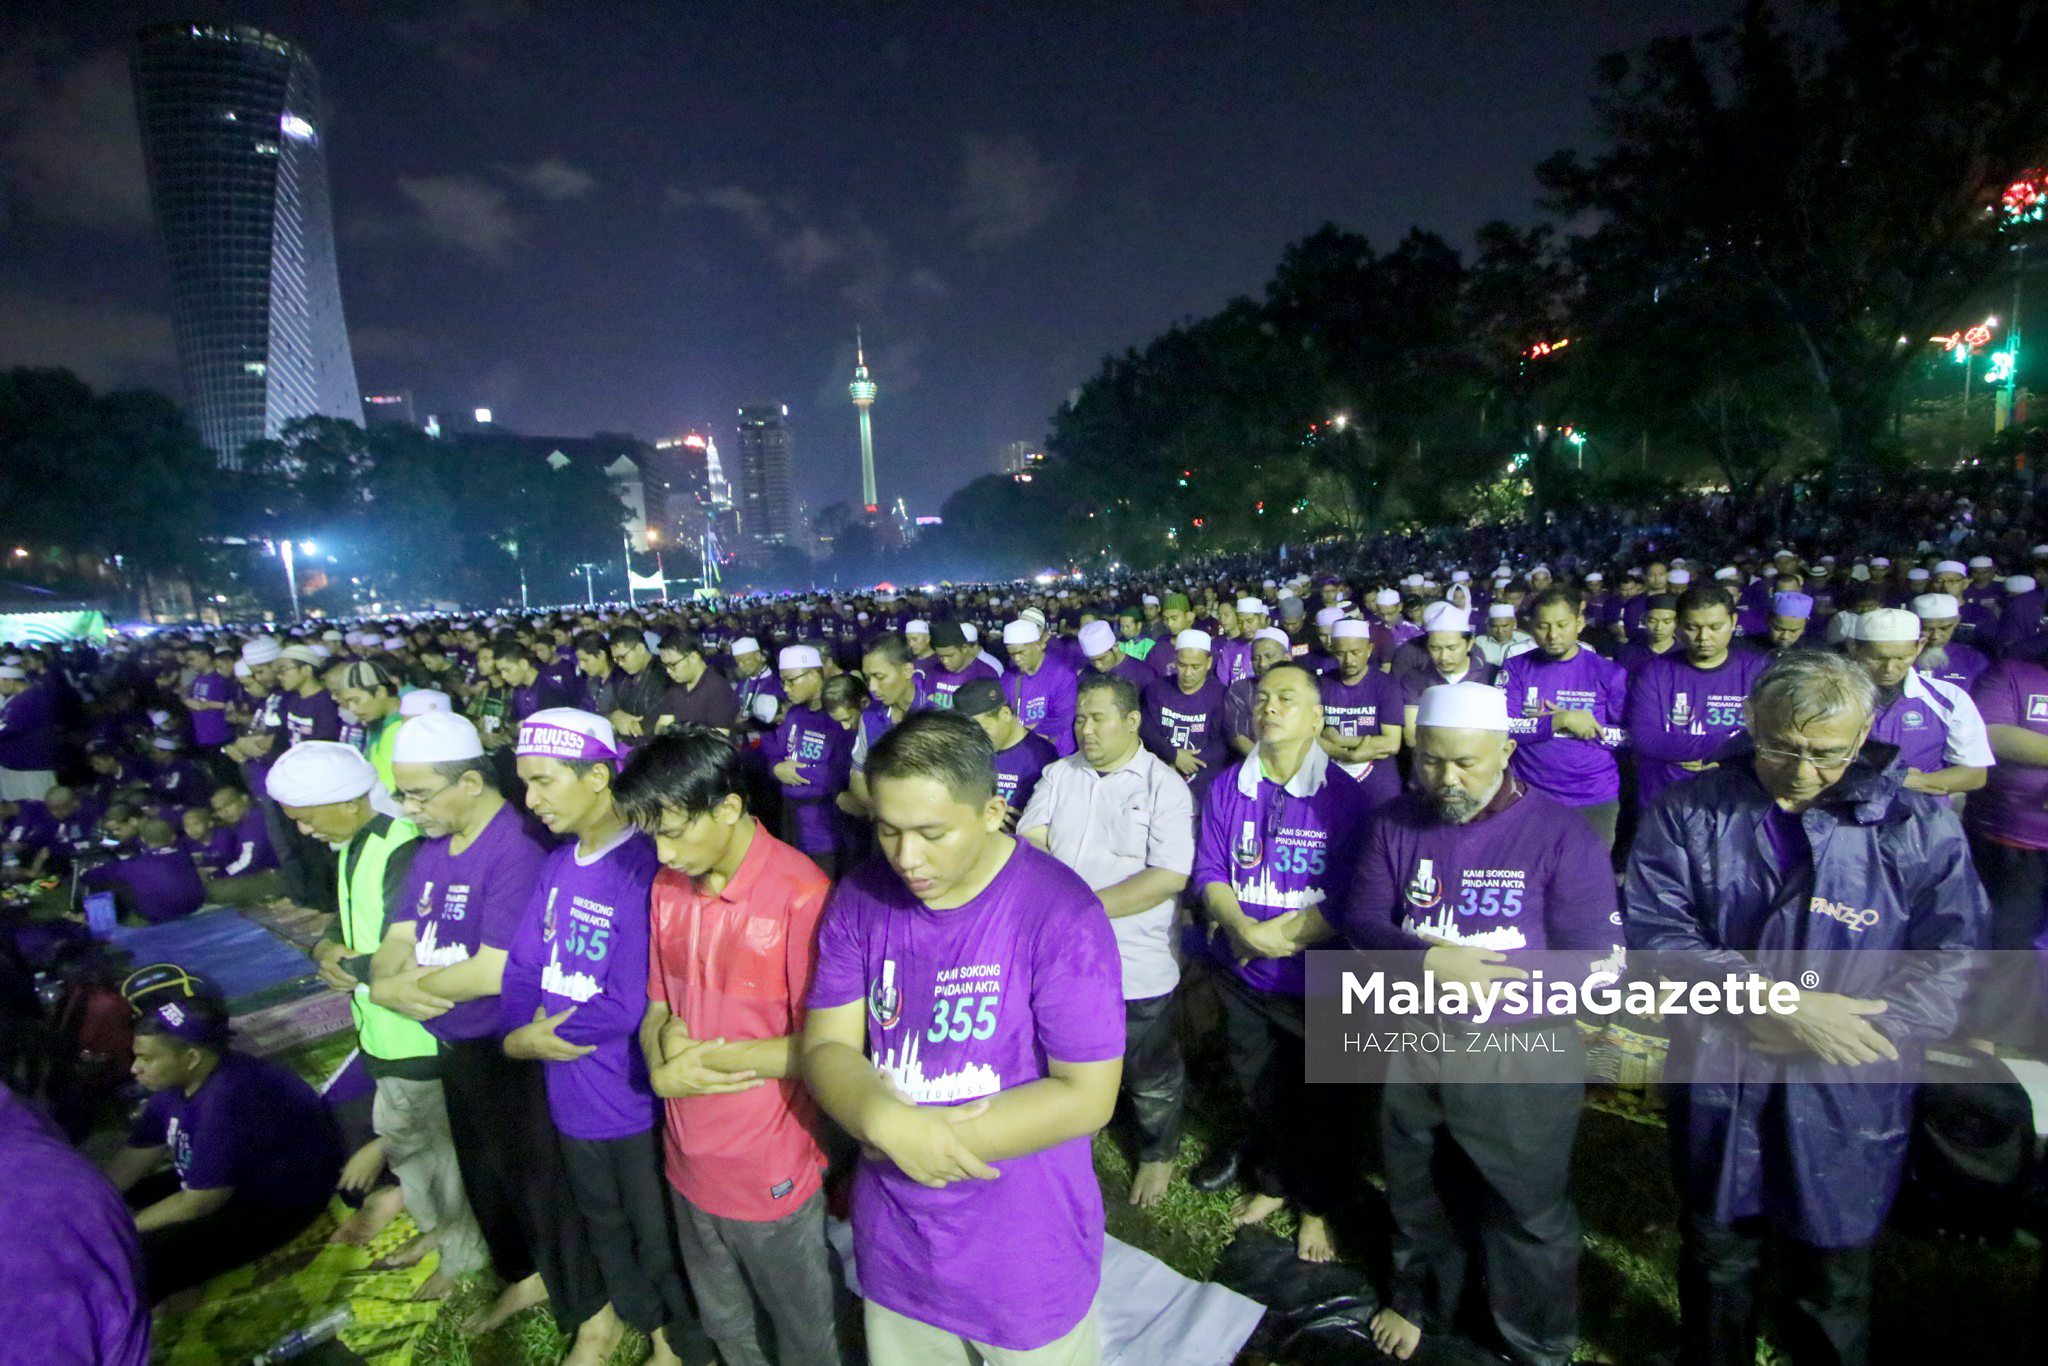 Ribuan penyokong yang hadir menunaikan solat fardhu pada Perhimpunan RUU 355 anjuran Pas di Padang Merbok, Kuala Lumpur. foto MOHD HAZROL ZAINAL 18 FEBRUARI 2017